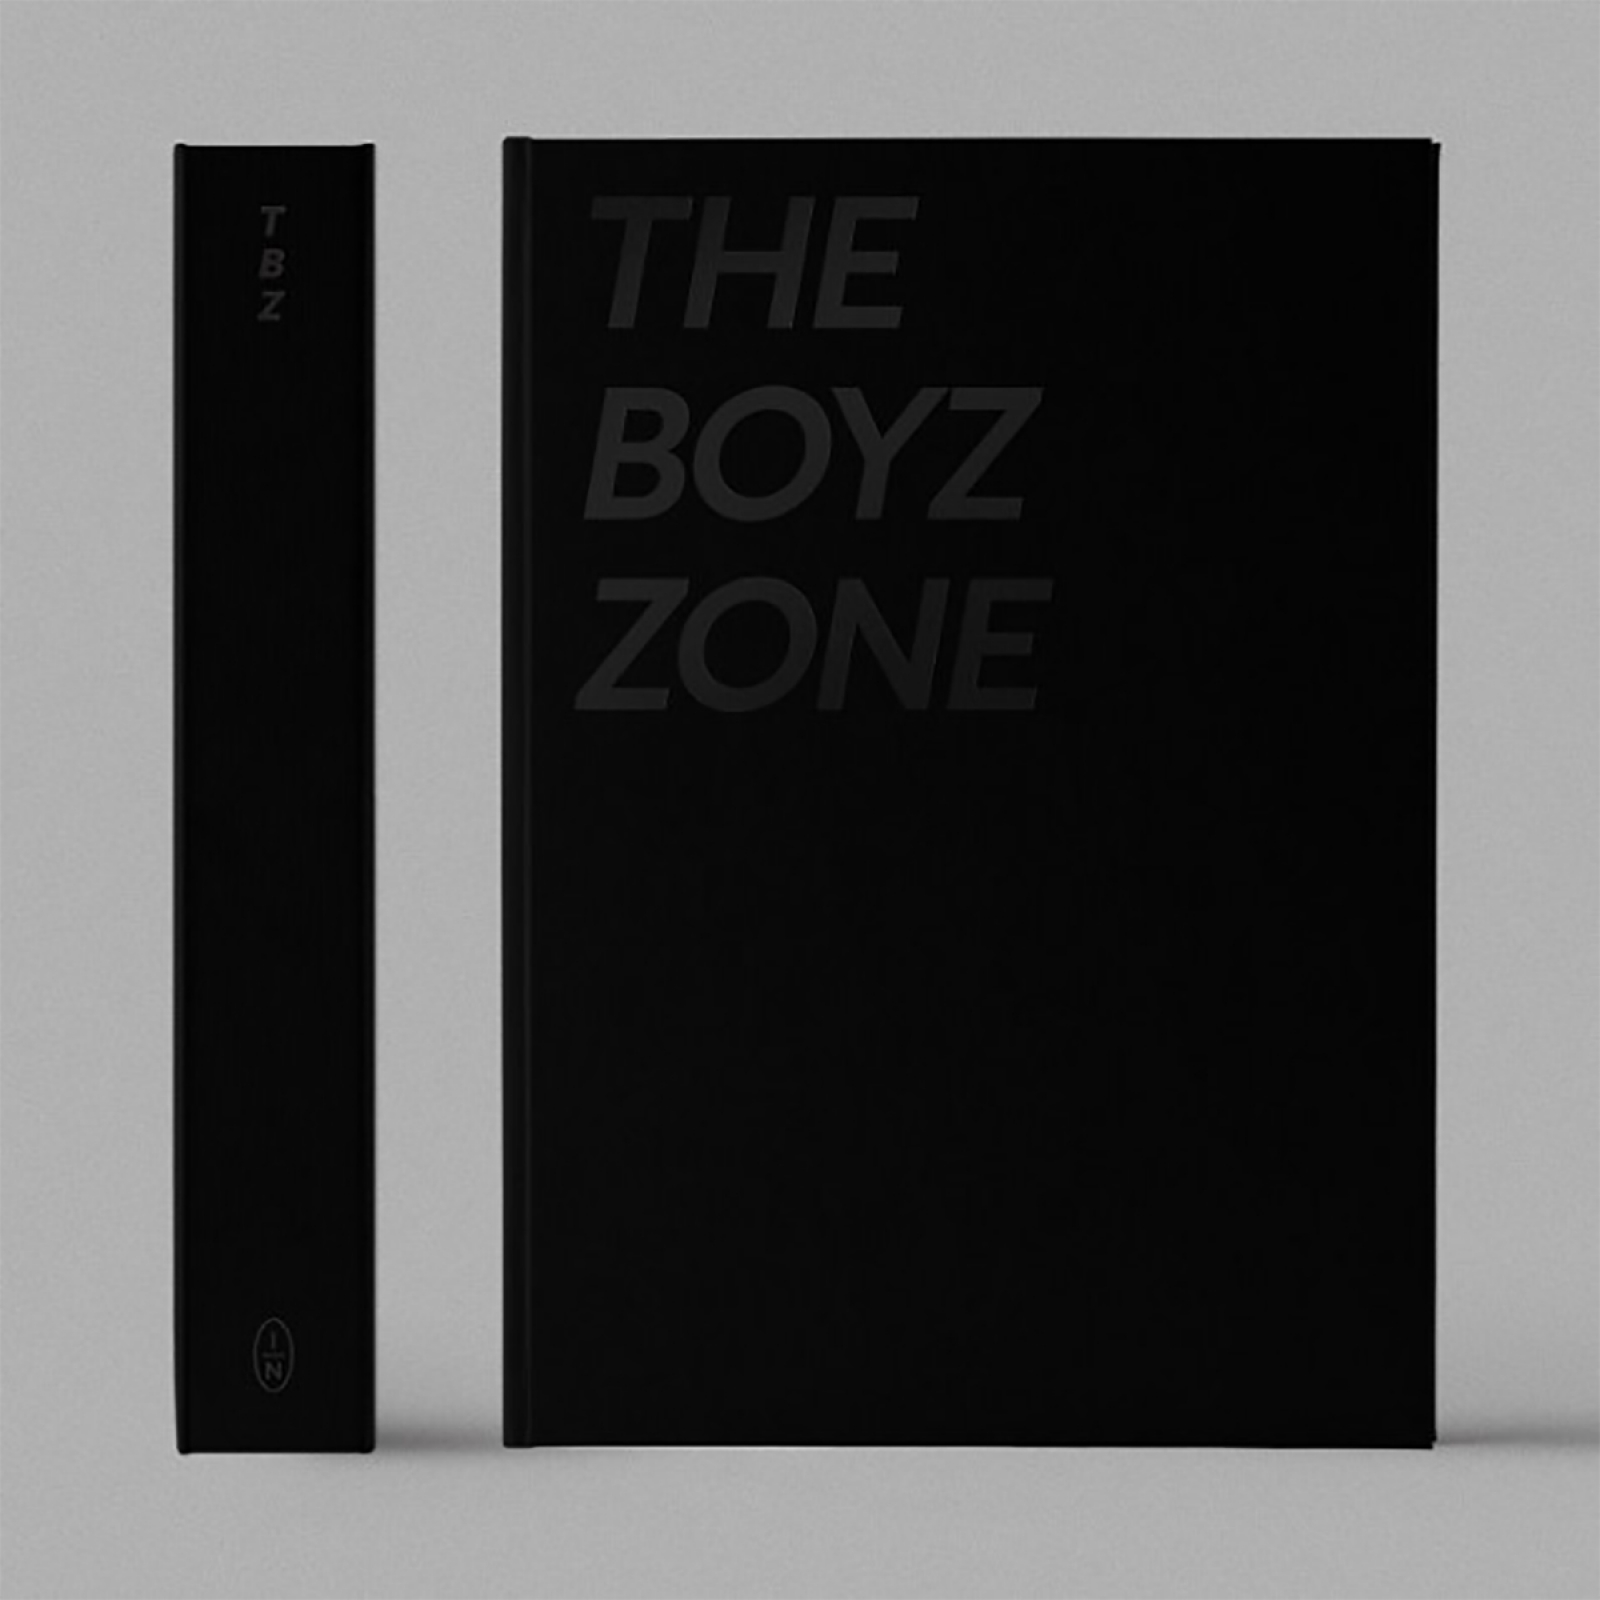 [Photobook] THE BOYZ - THE BOYZ TOUR PHOTOBOOK [THE BOYZ ZONE]